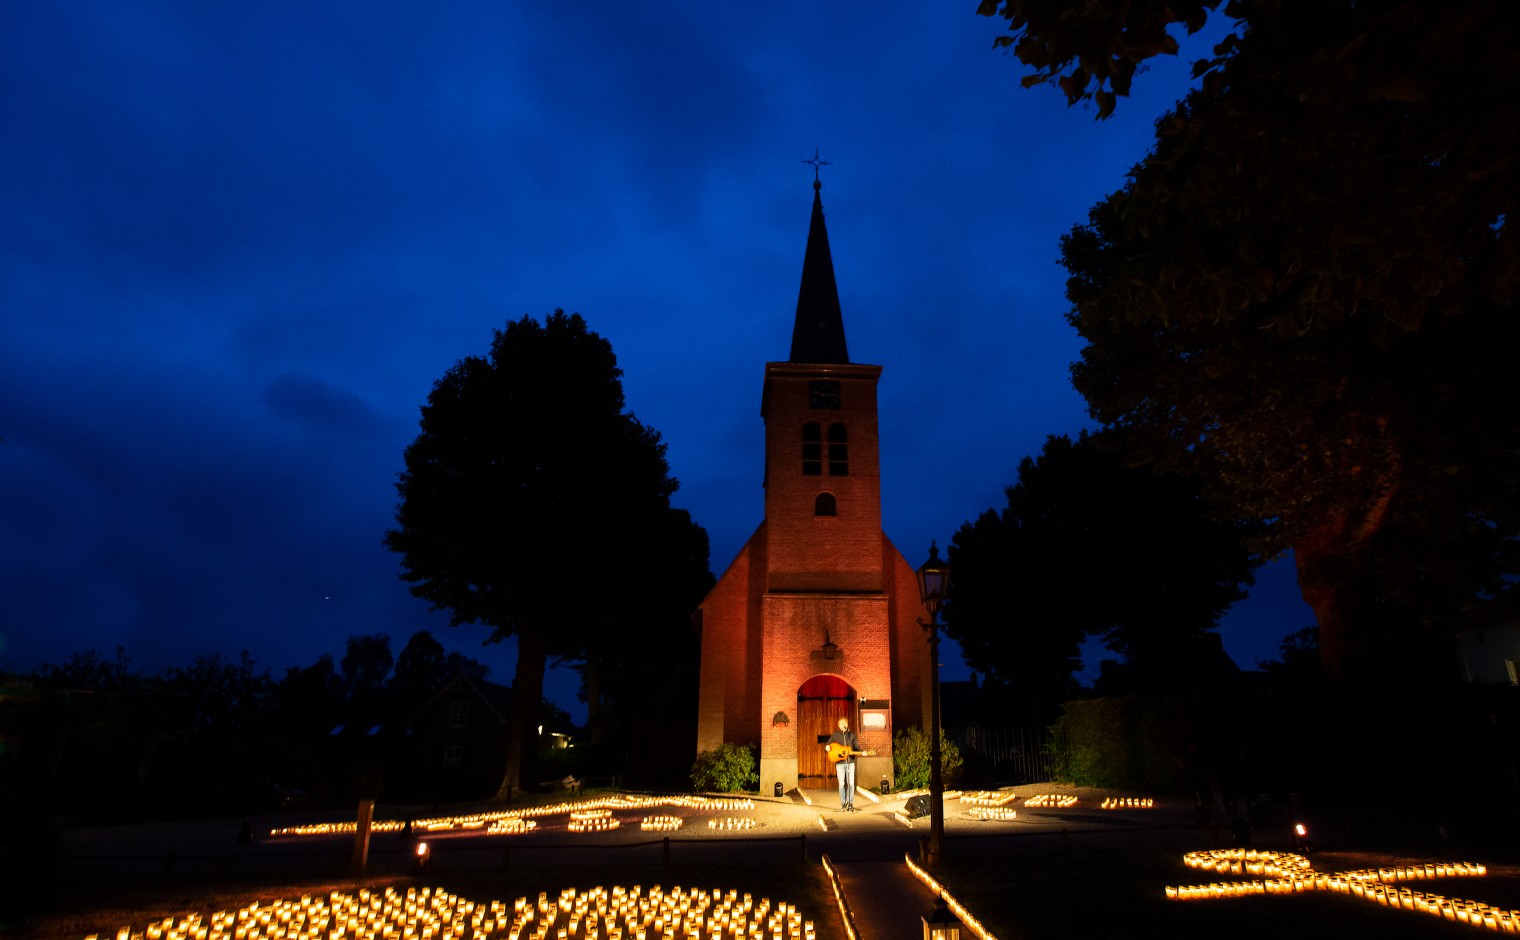 Op Landgoed Hemmen, gelegen tussen Tiel en Arnhem, startte om 4.30 de speciale editie van Alpe d'HuZes tussen de kaarsen.